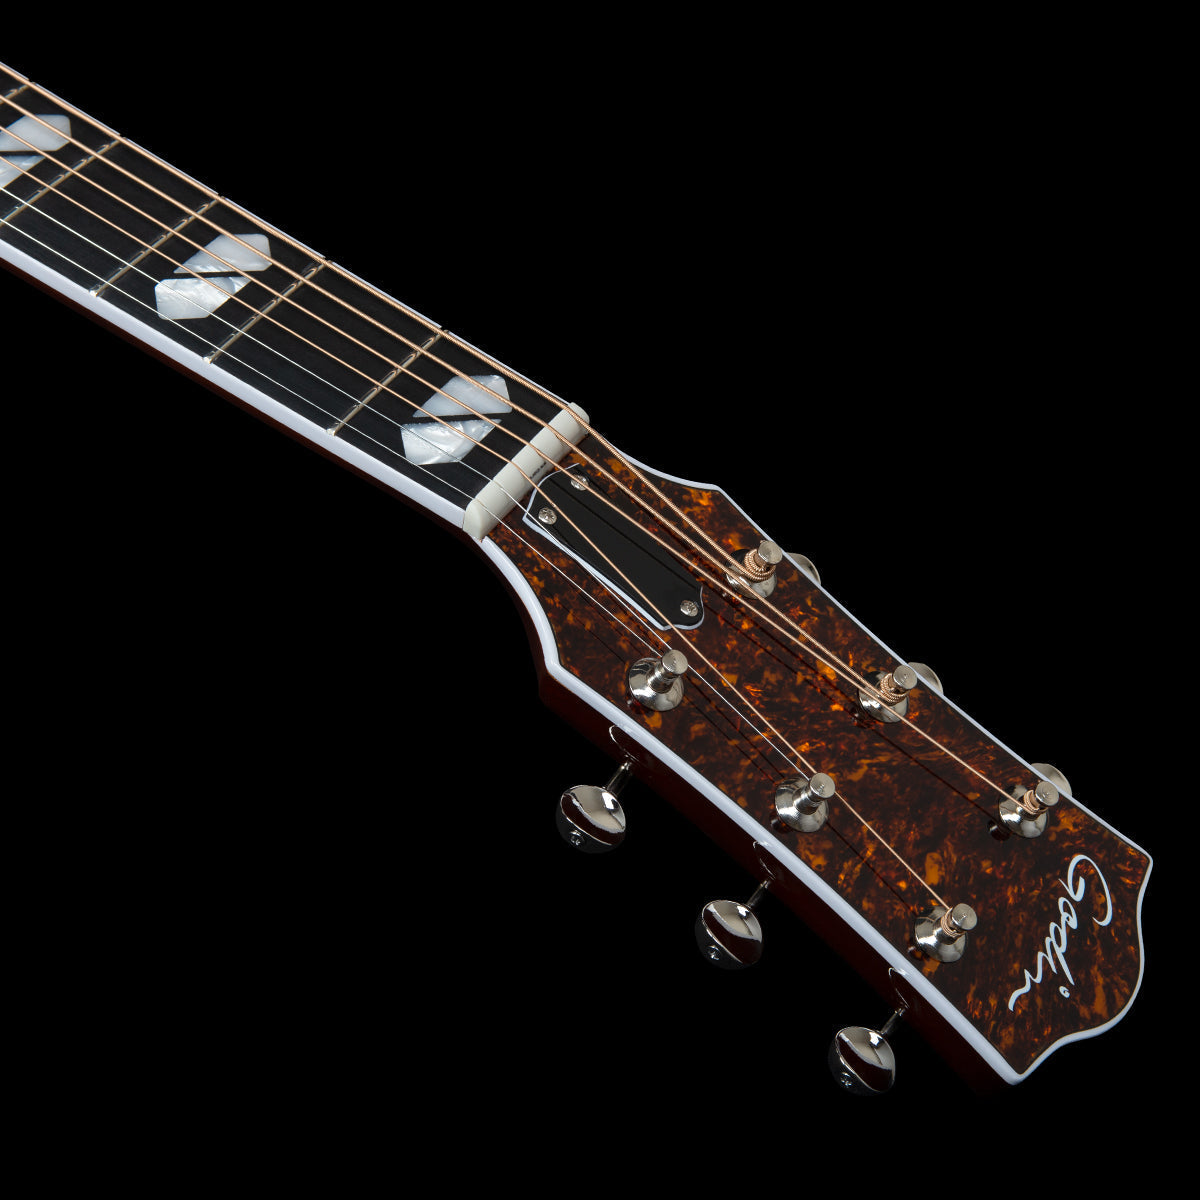 Godin Metropolis LTD HG Electro-Acoustic Guitar with Bag ~ Havana Burst,  for sale at Richards Guitars.